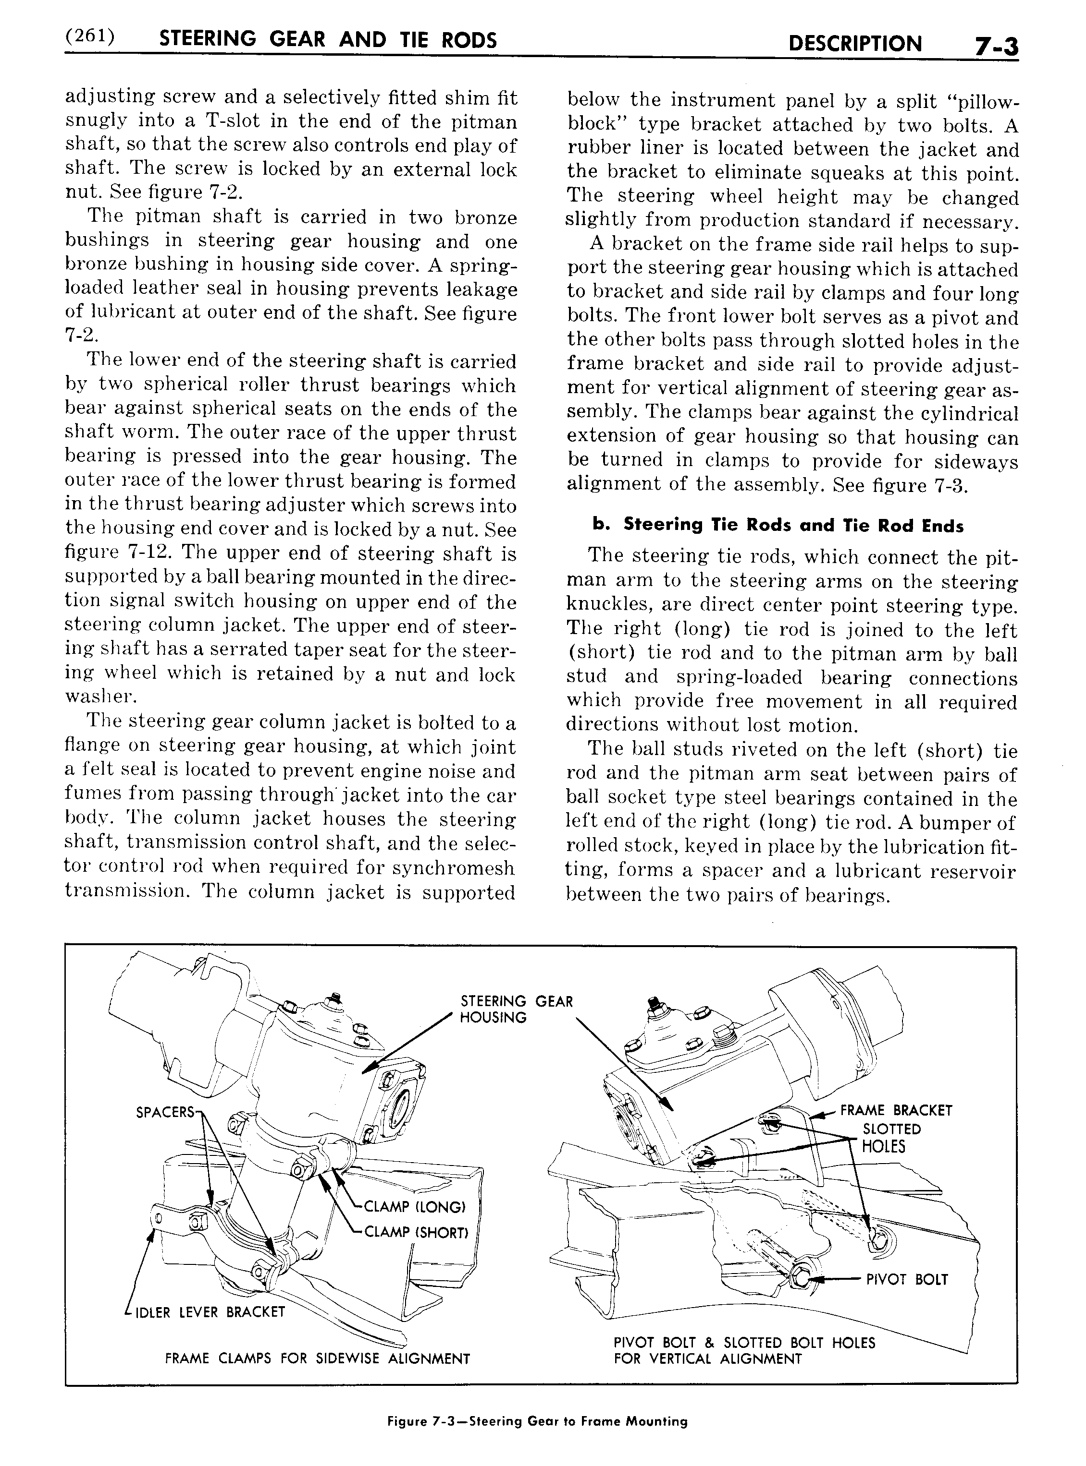 n_08 1951 Buick Shop Manual - Steering-003-003.jpg